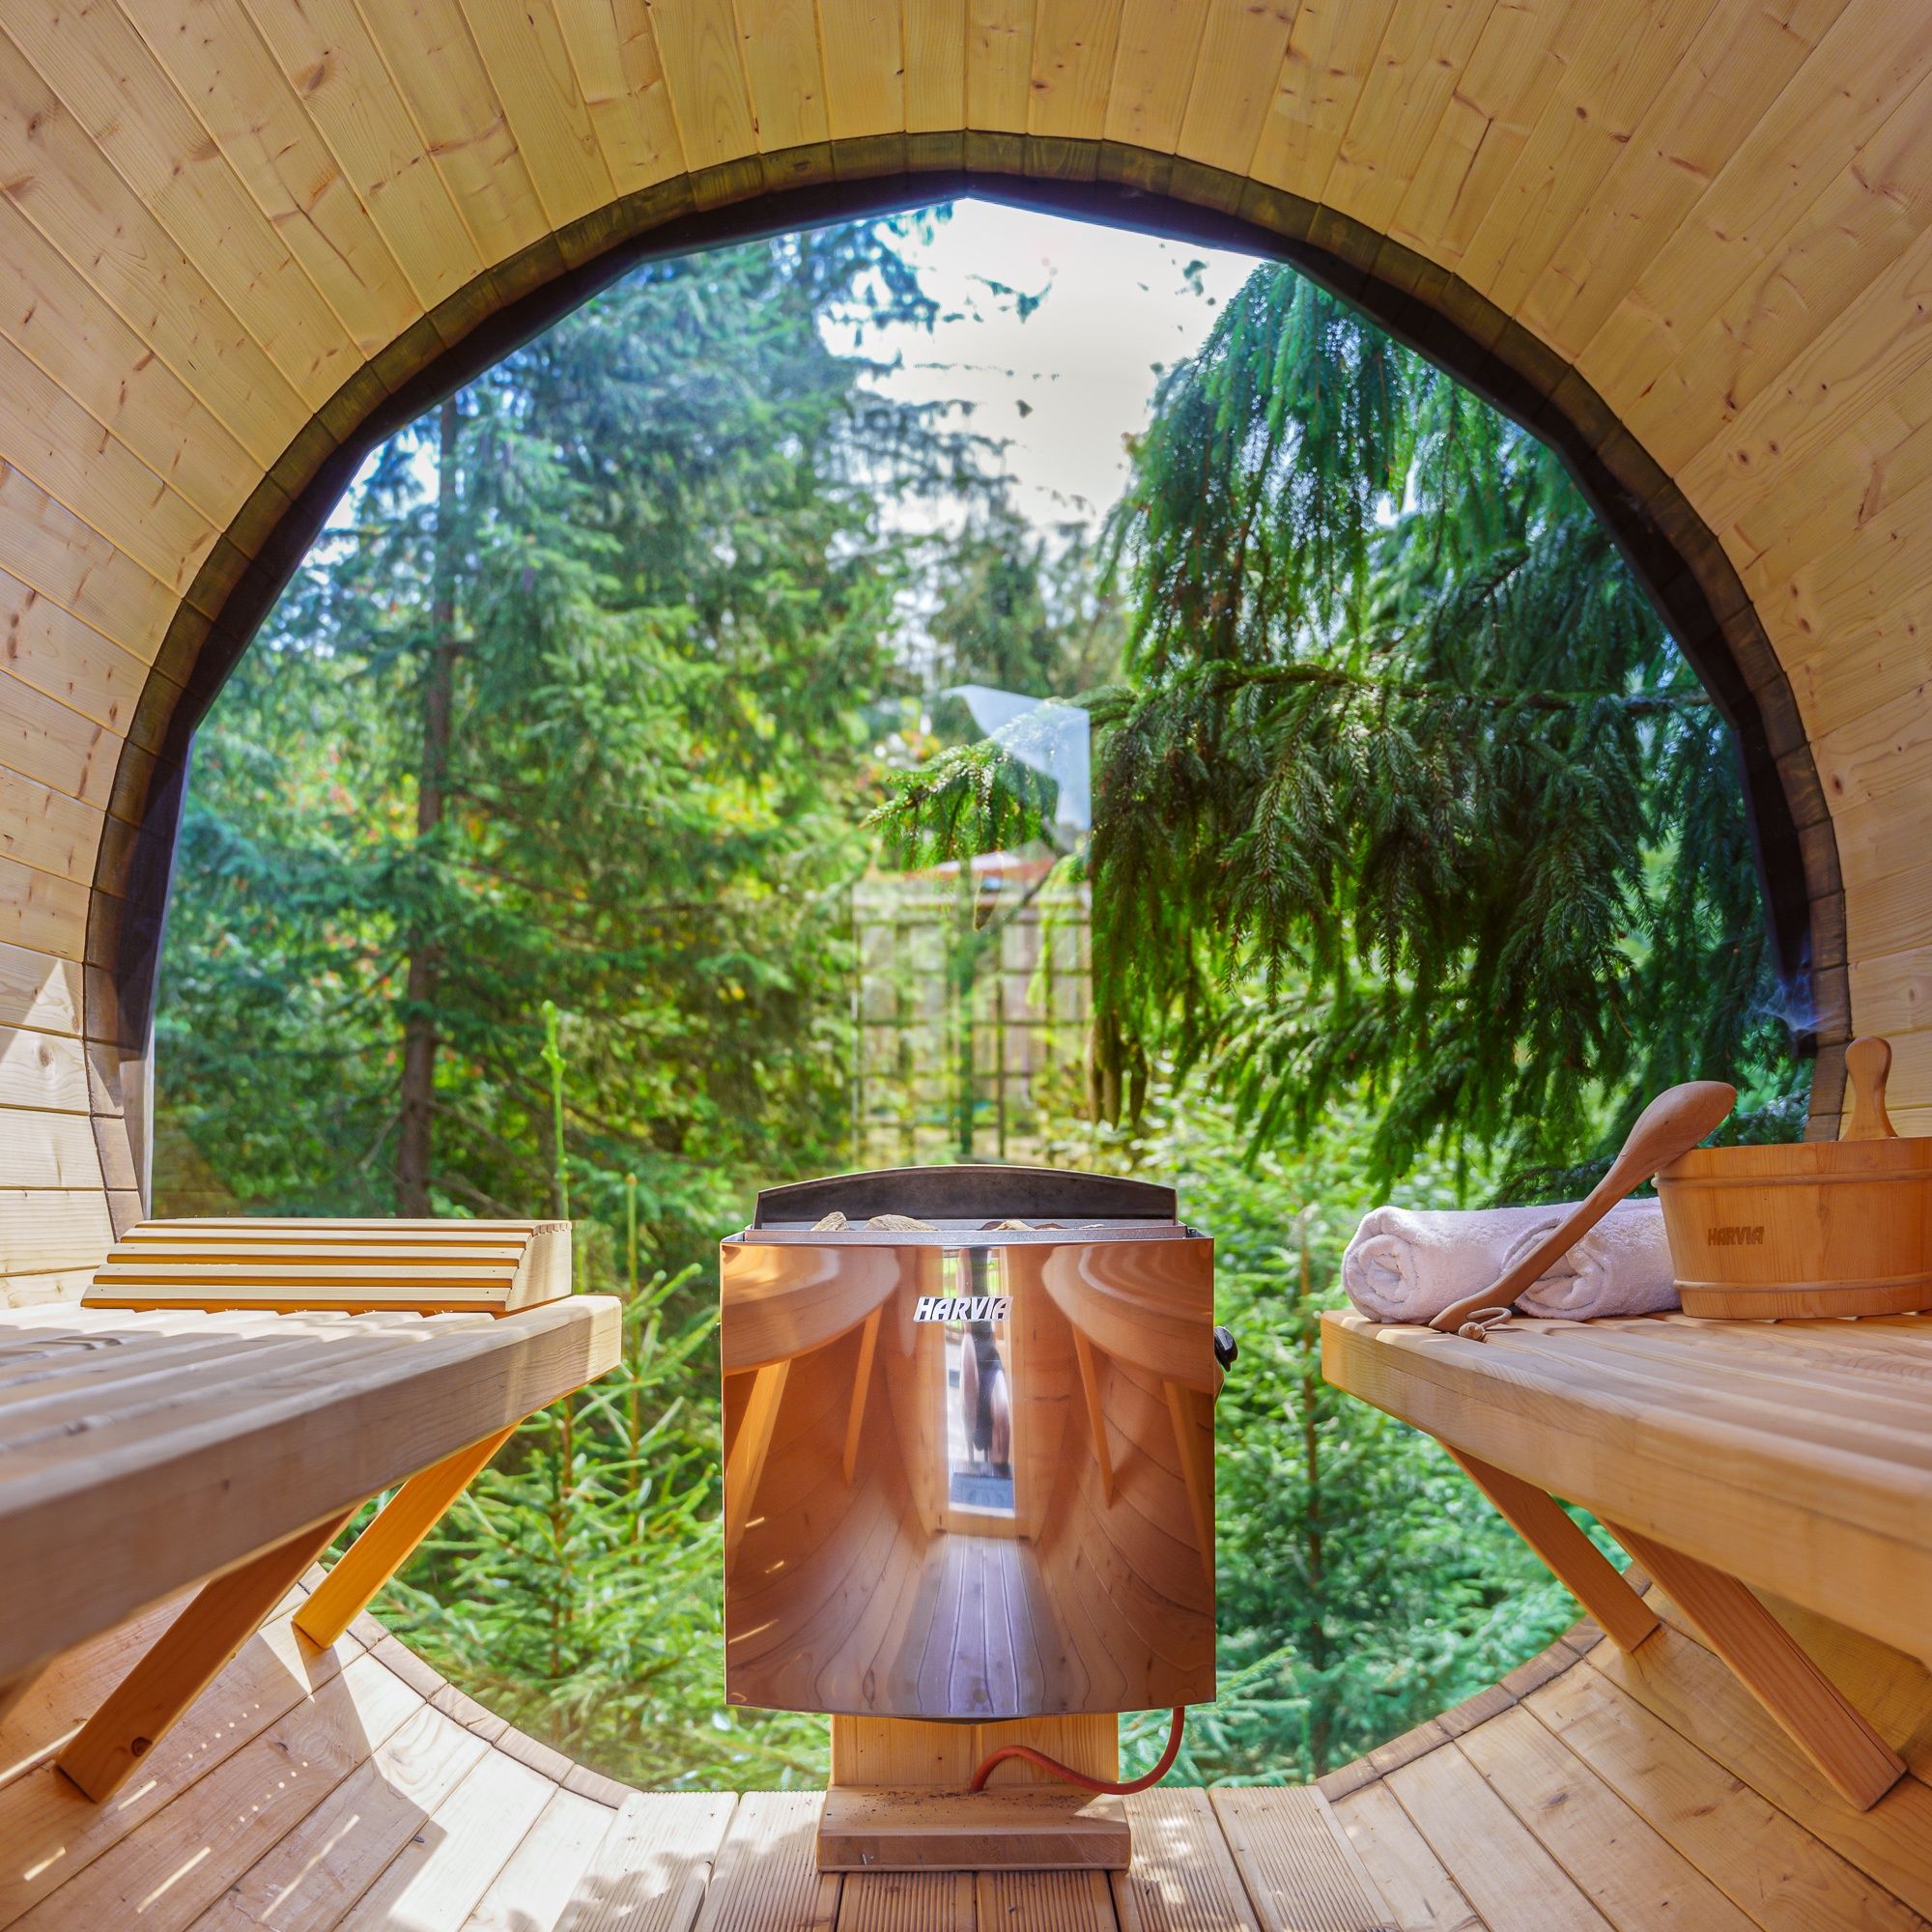 Wolny dzisiaj Domki z jacuzzi domek w górach balia sauna kino noclegi